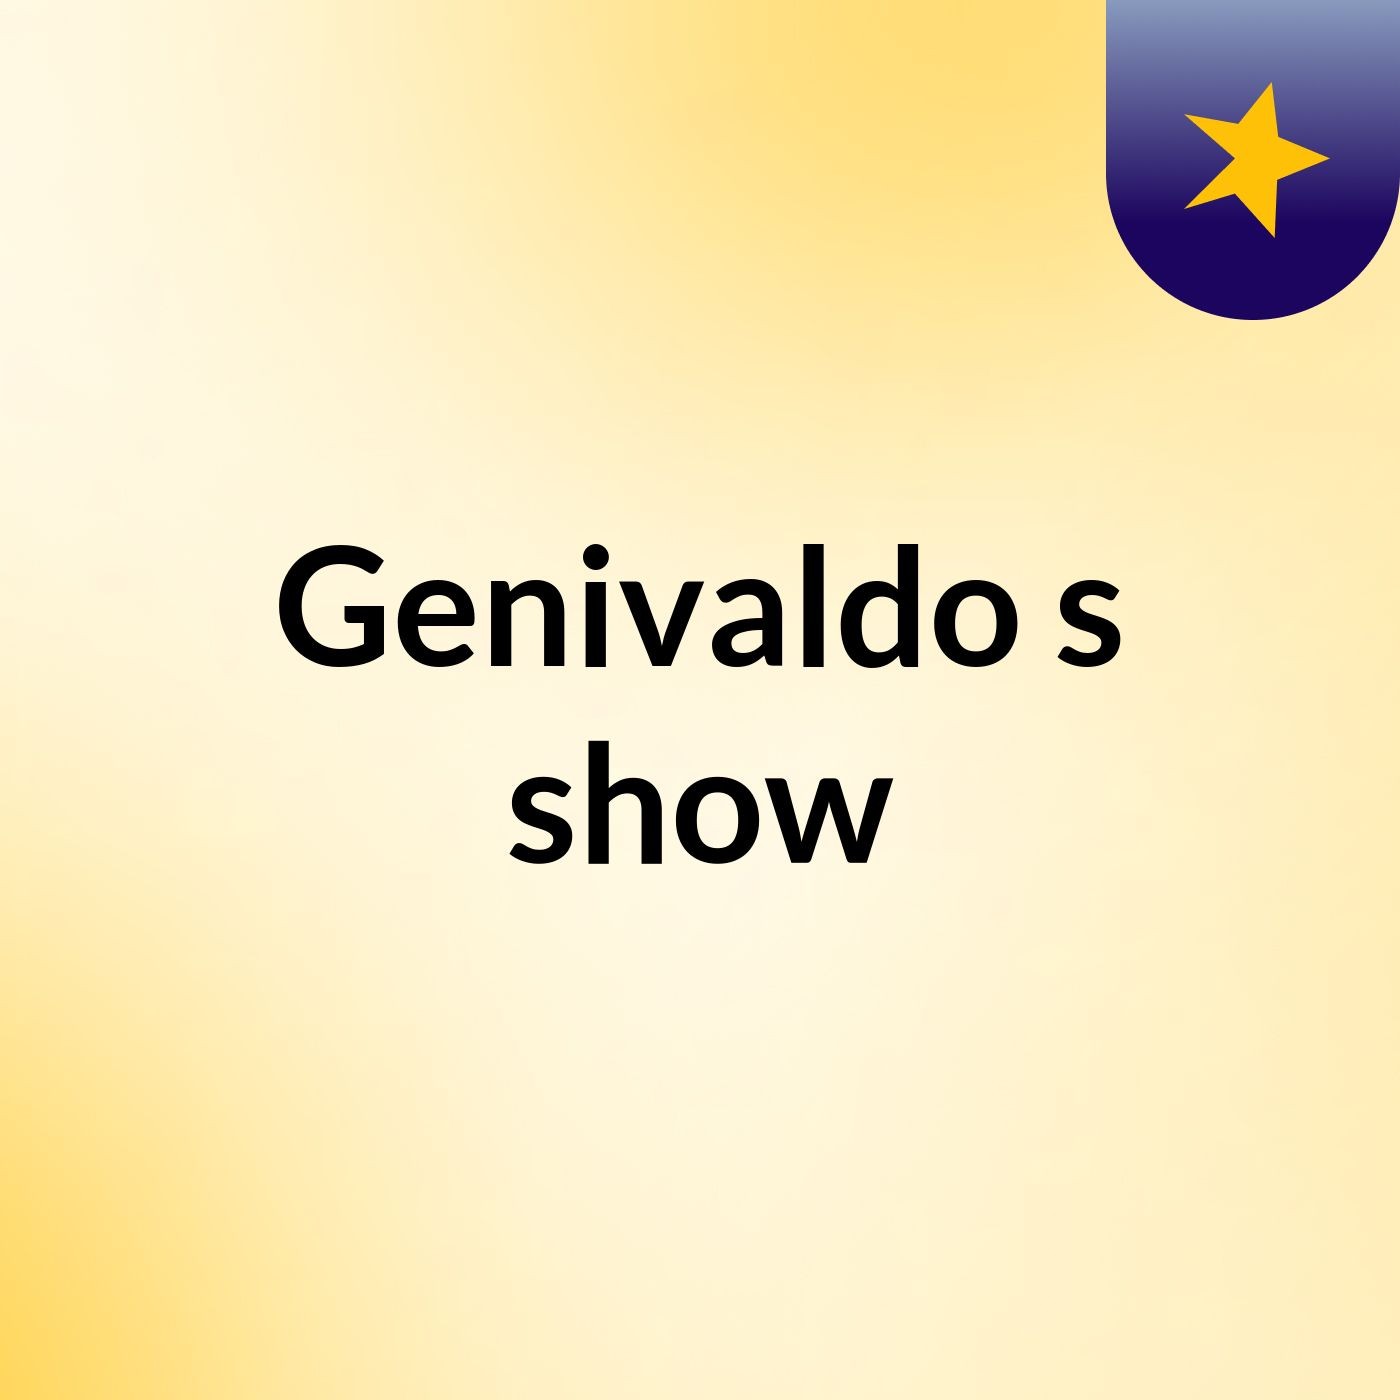 Genivaldo's show